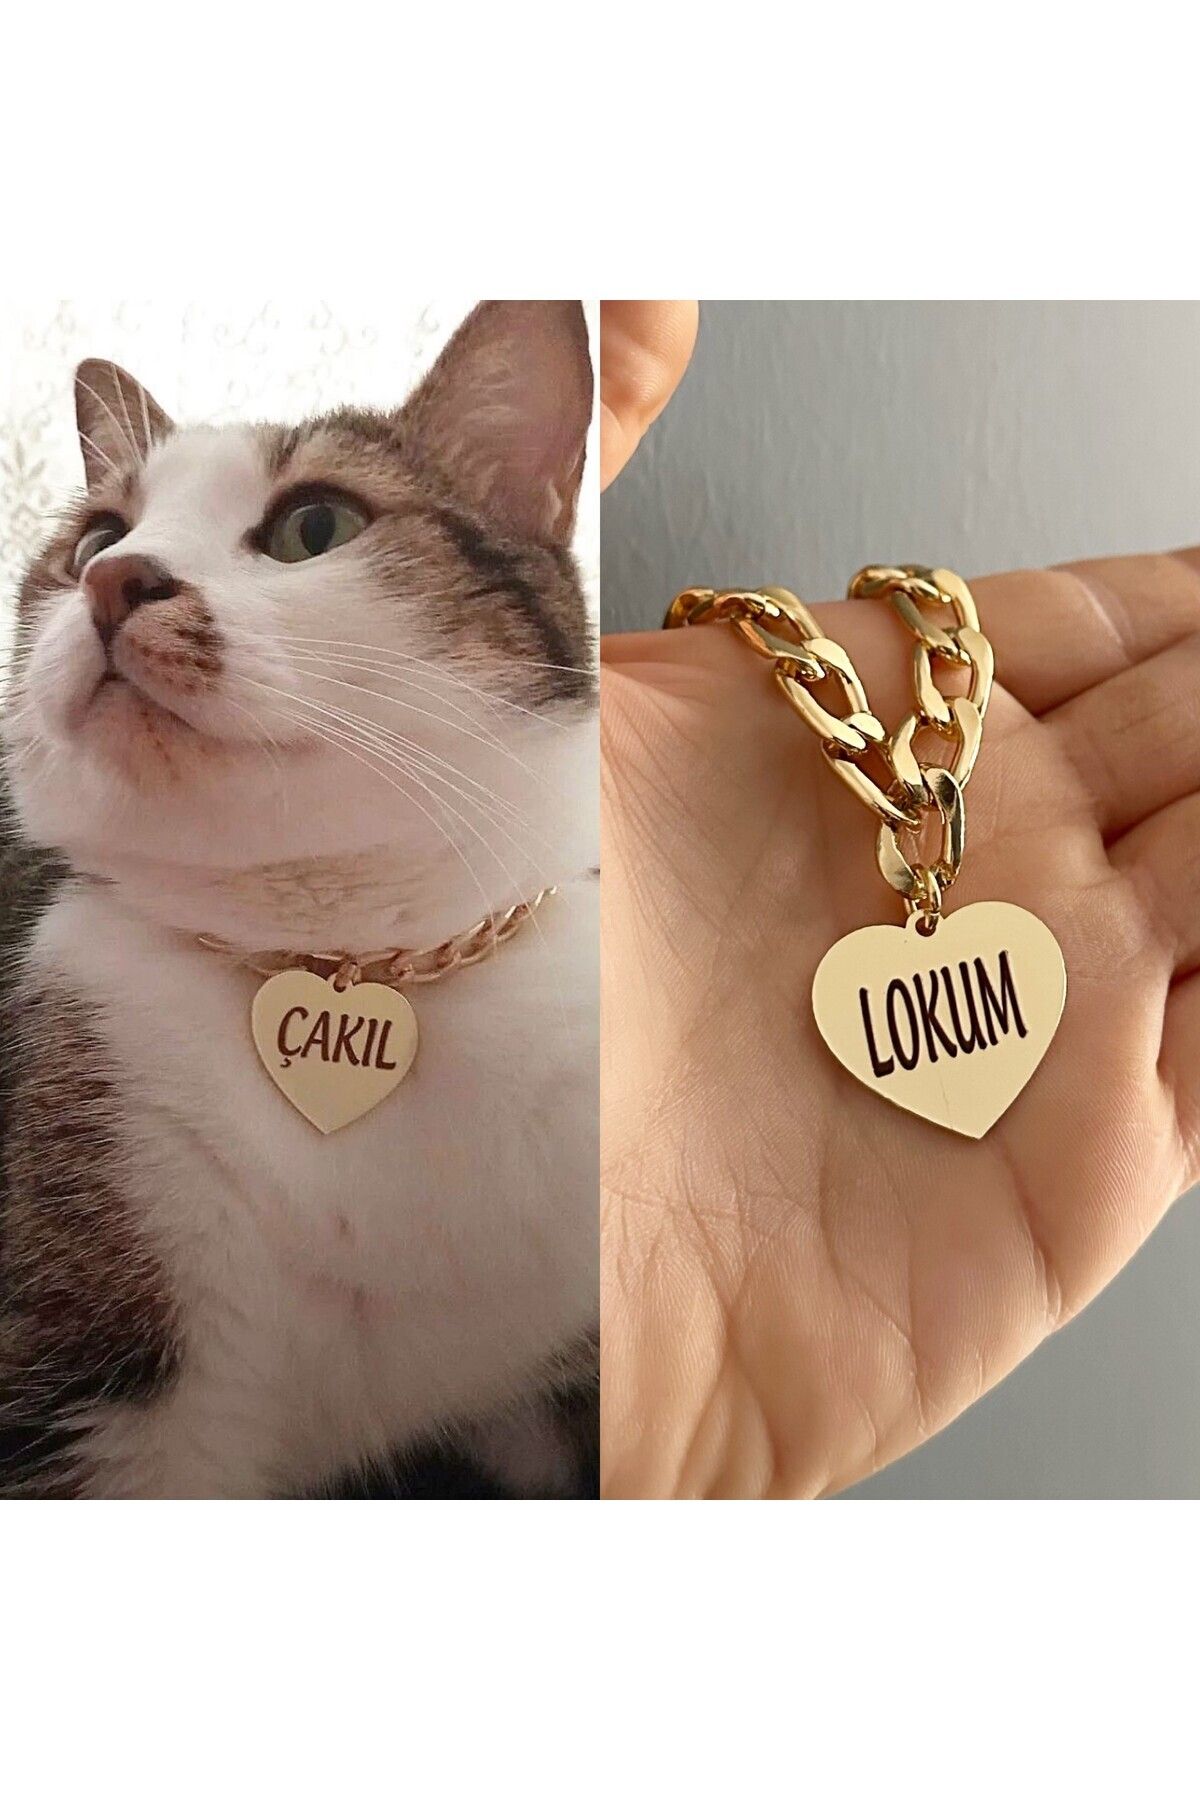 PETİSİM PET AKSESUARLARI Kedi Tasması Isimli Kedi Tasması Zincirli Tasma Paslanmaz Metal Künye